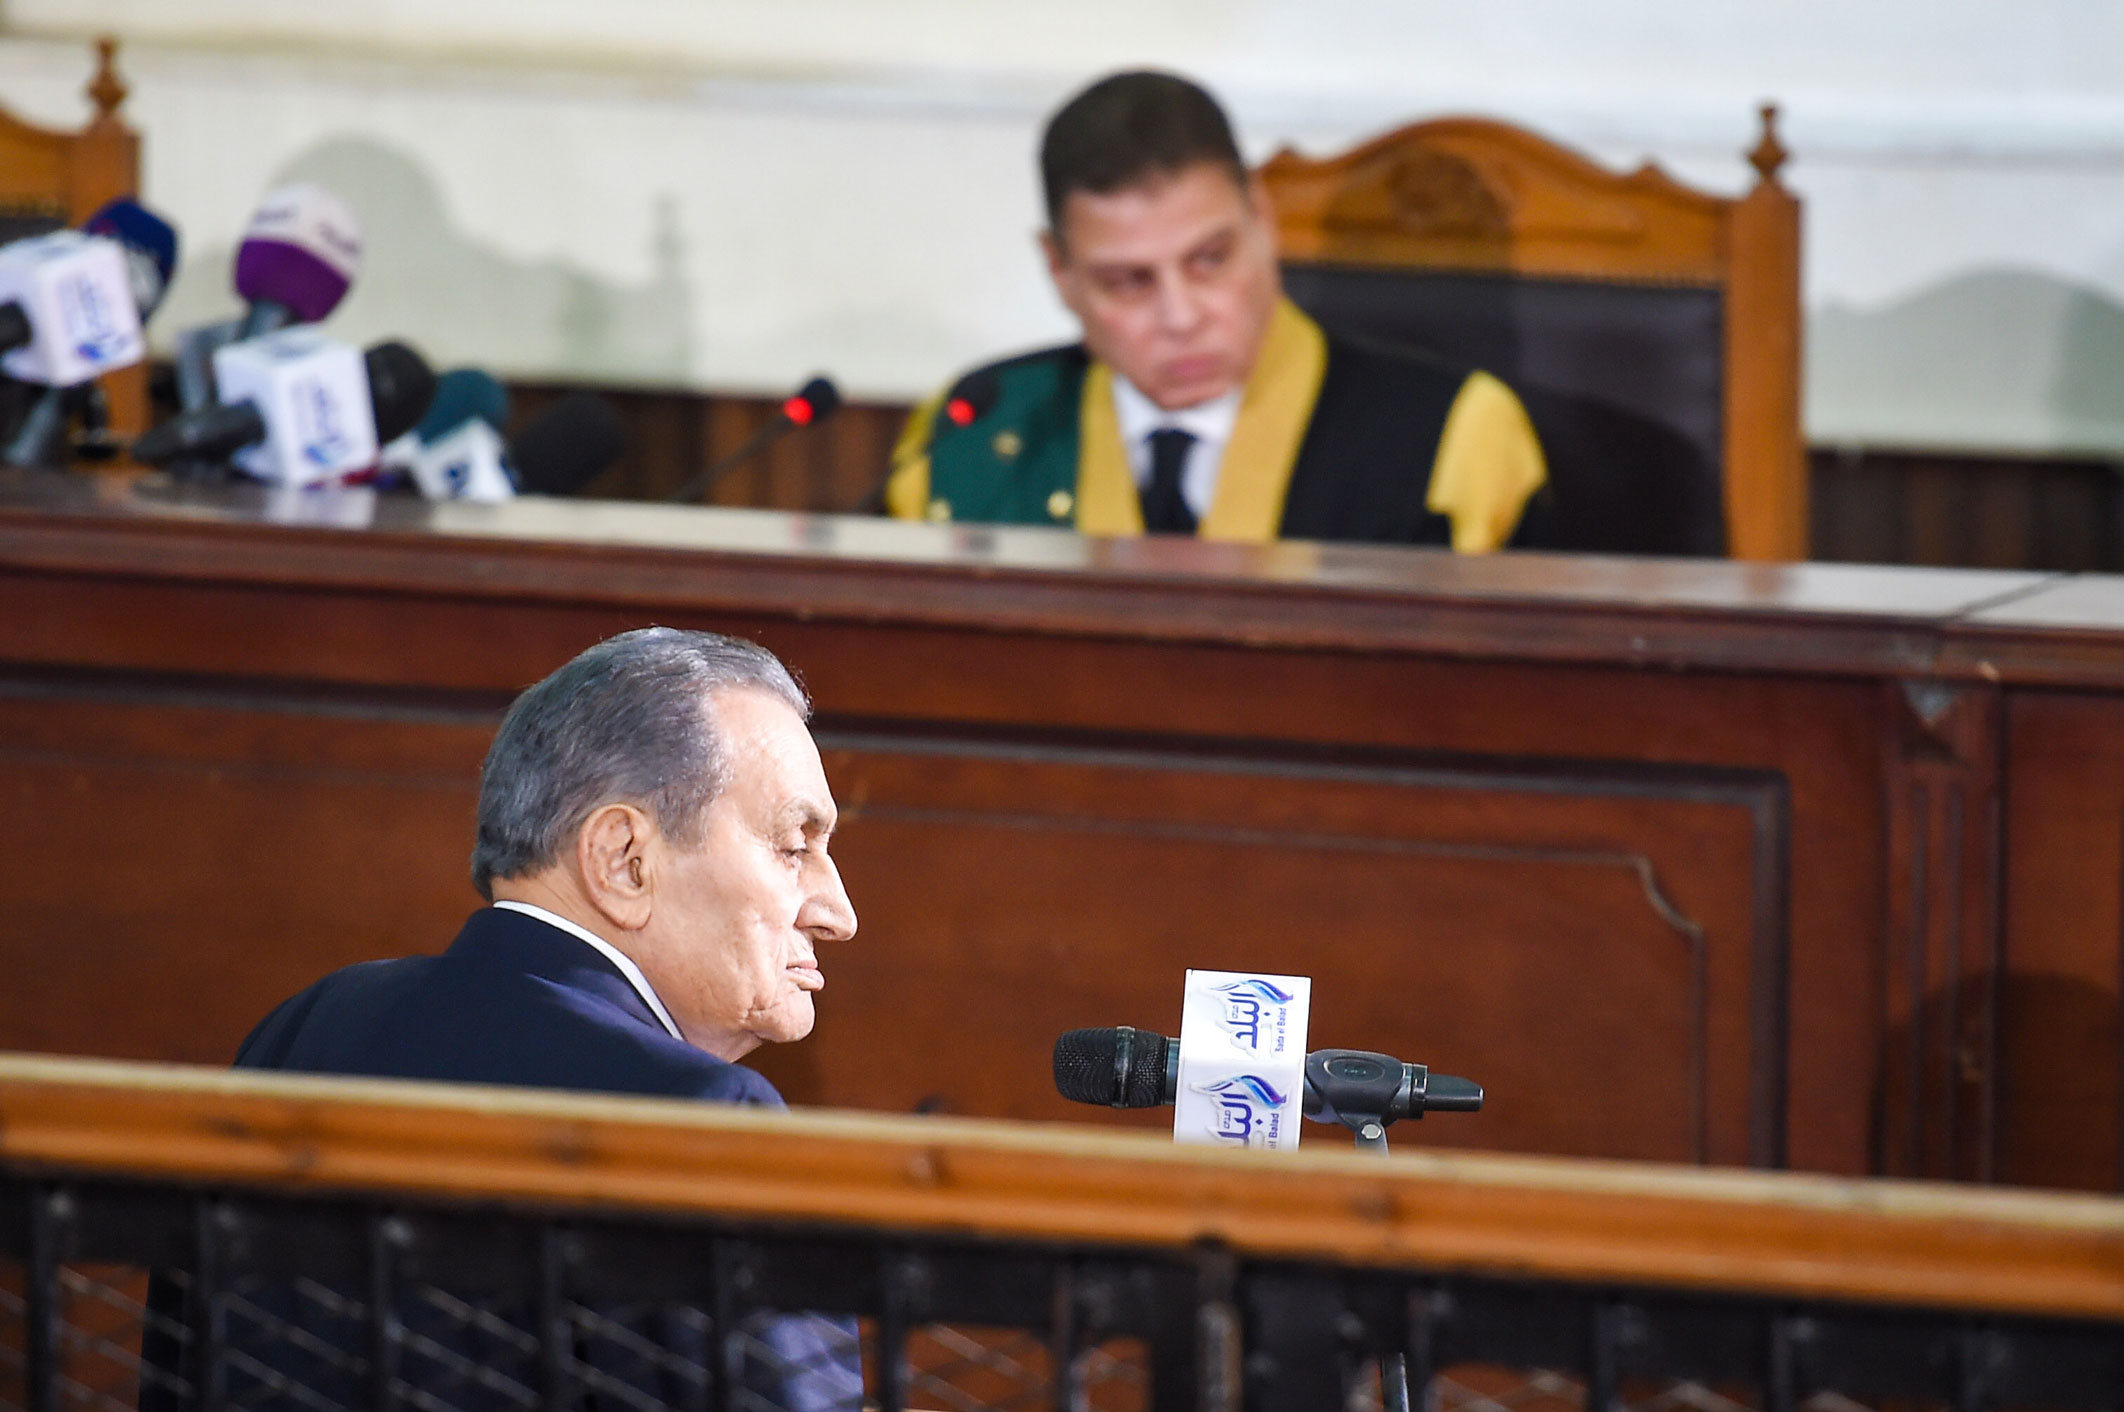 الرئيس المصري الأسبق حسني مبارك في أول ظهور له منذ عام ونصف العام